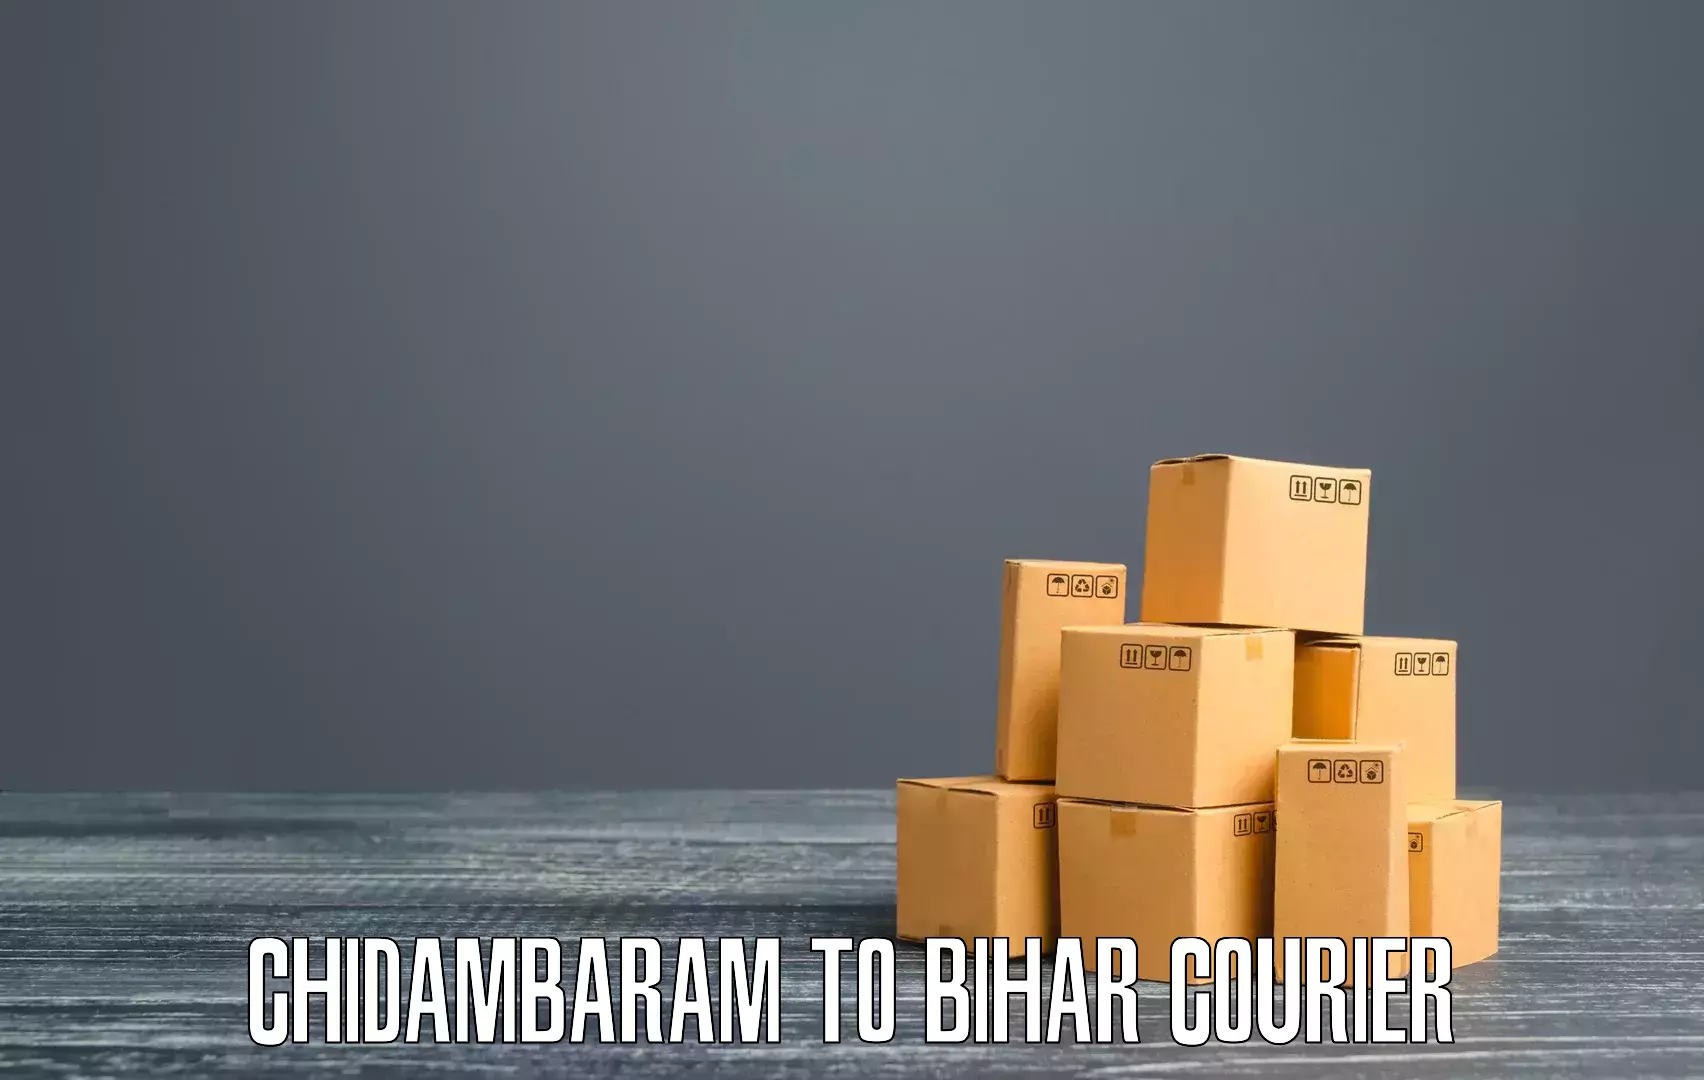 Courier app Chidambaram to Dhaka